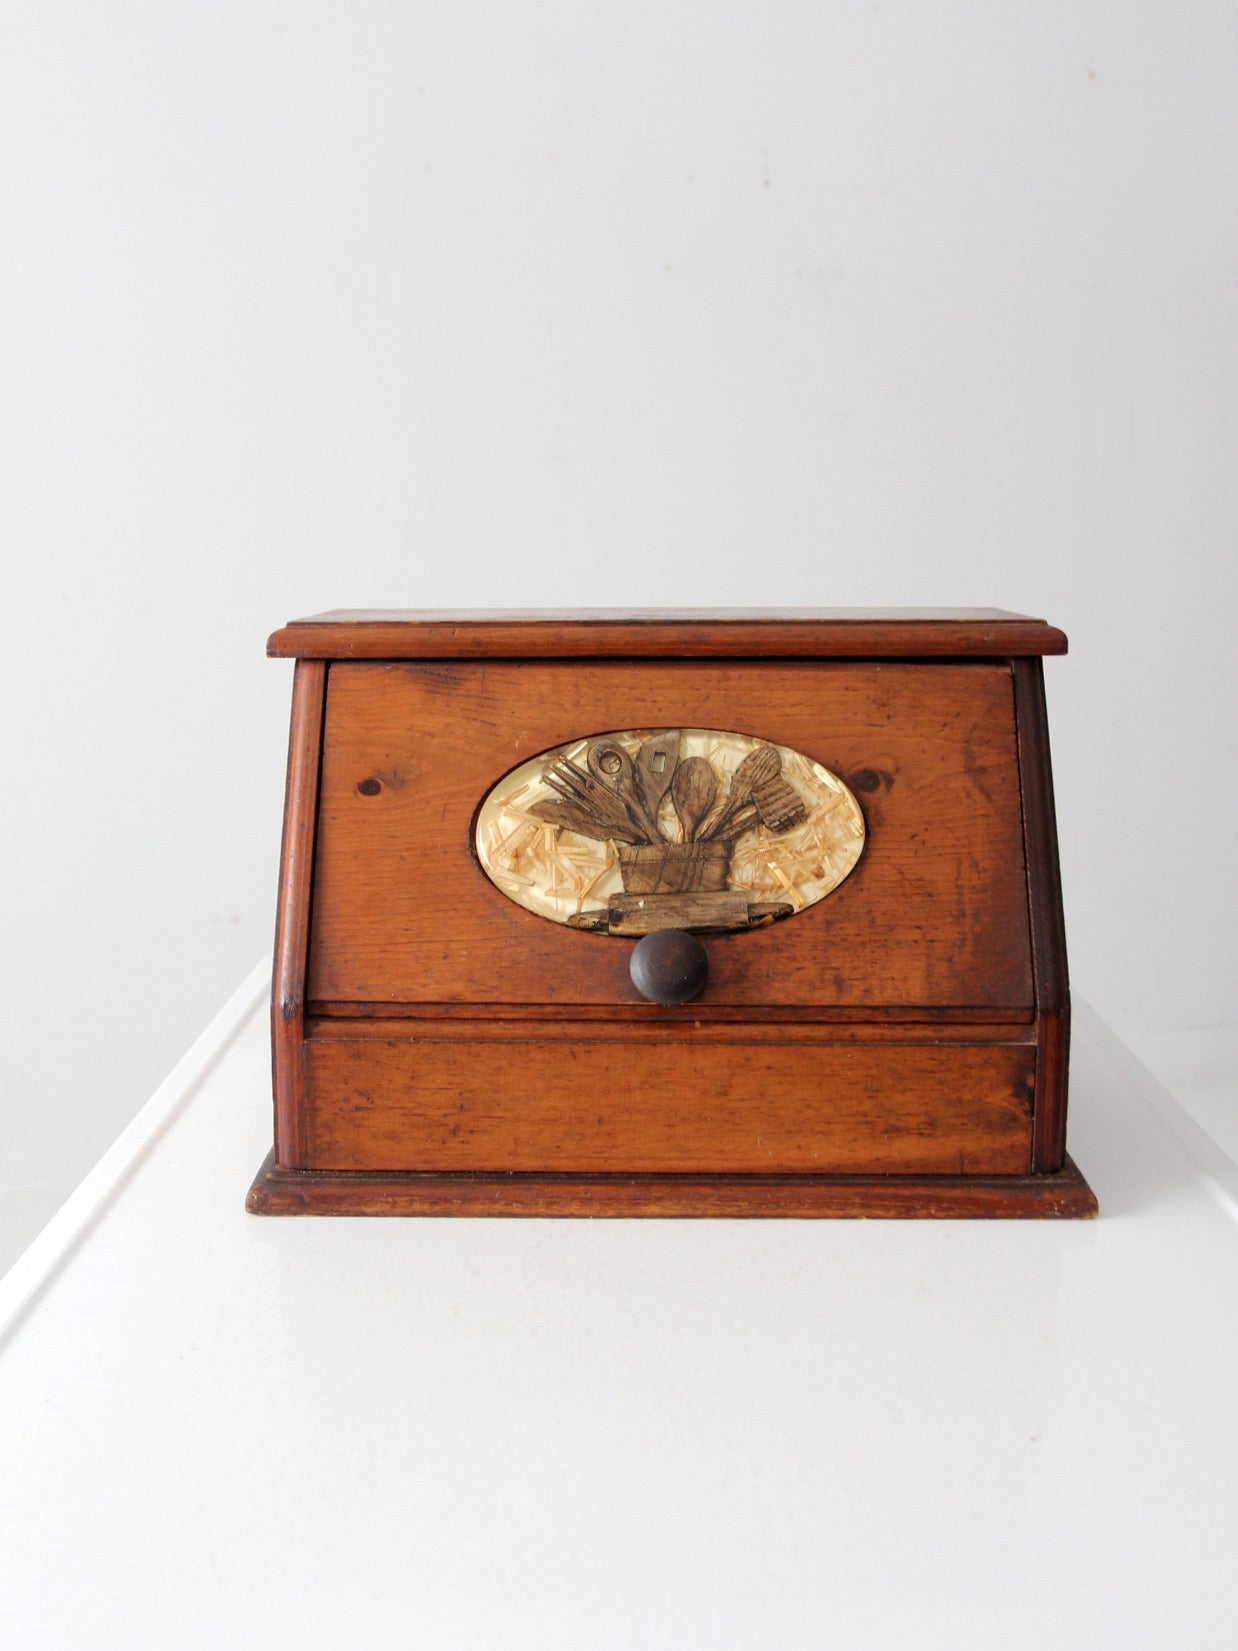 vintage wooden bread box